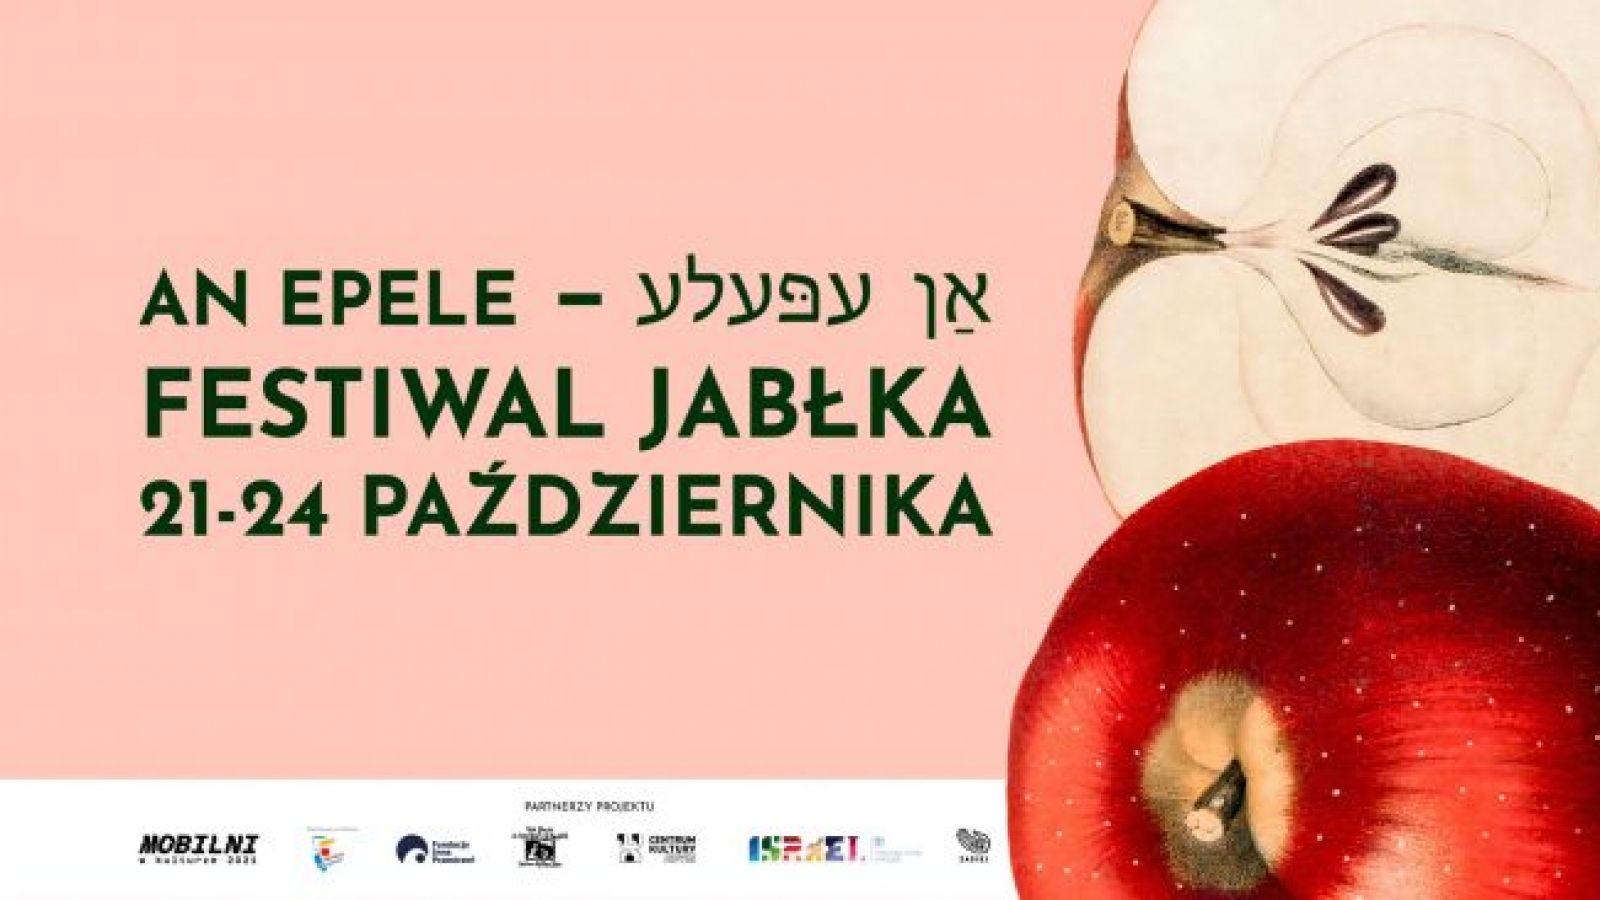 Po prawej stronie grafiki znajduje się jabłko, w centralnej części - napis "An epele. Festiwal Jabłka 21-24 października", w dolnej części logotypy organizacji współpracujących